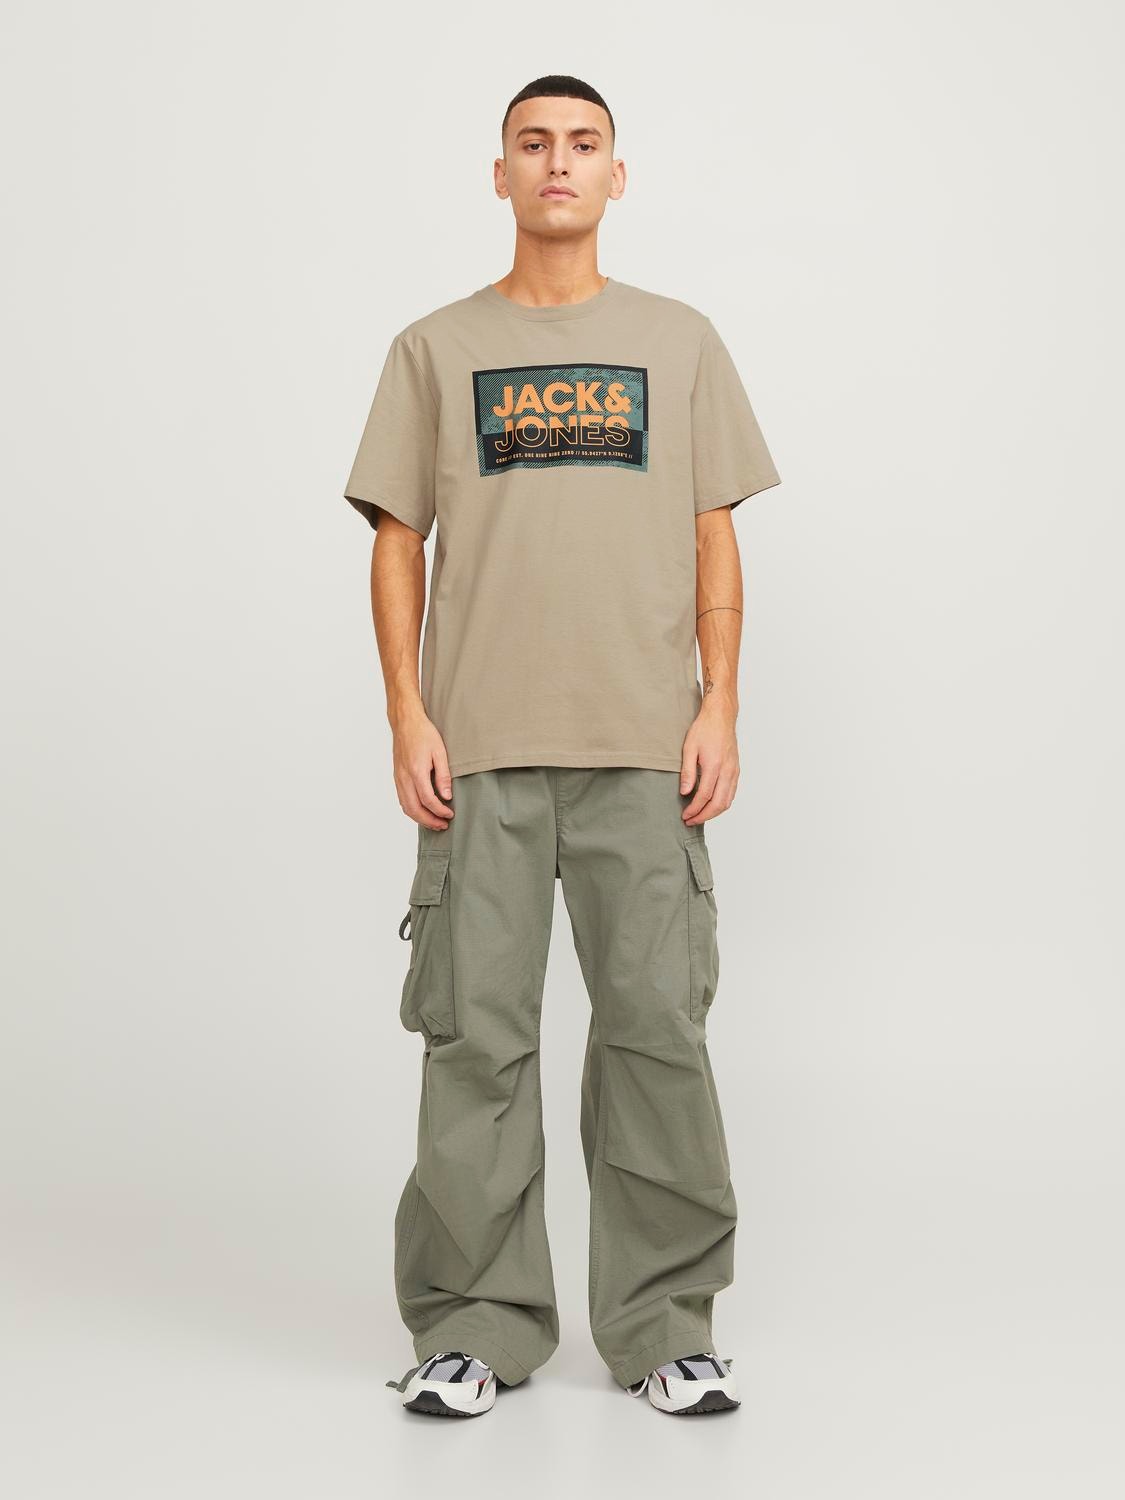 Jack & Jones Paquete de 3 Camiseta Estampado Cuello redondo -Navy Blazer - 12260780